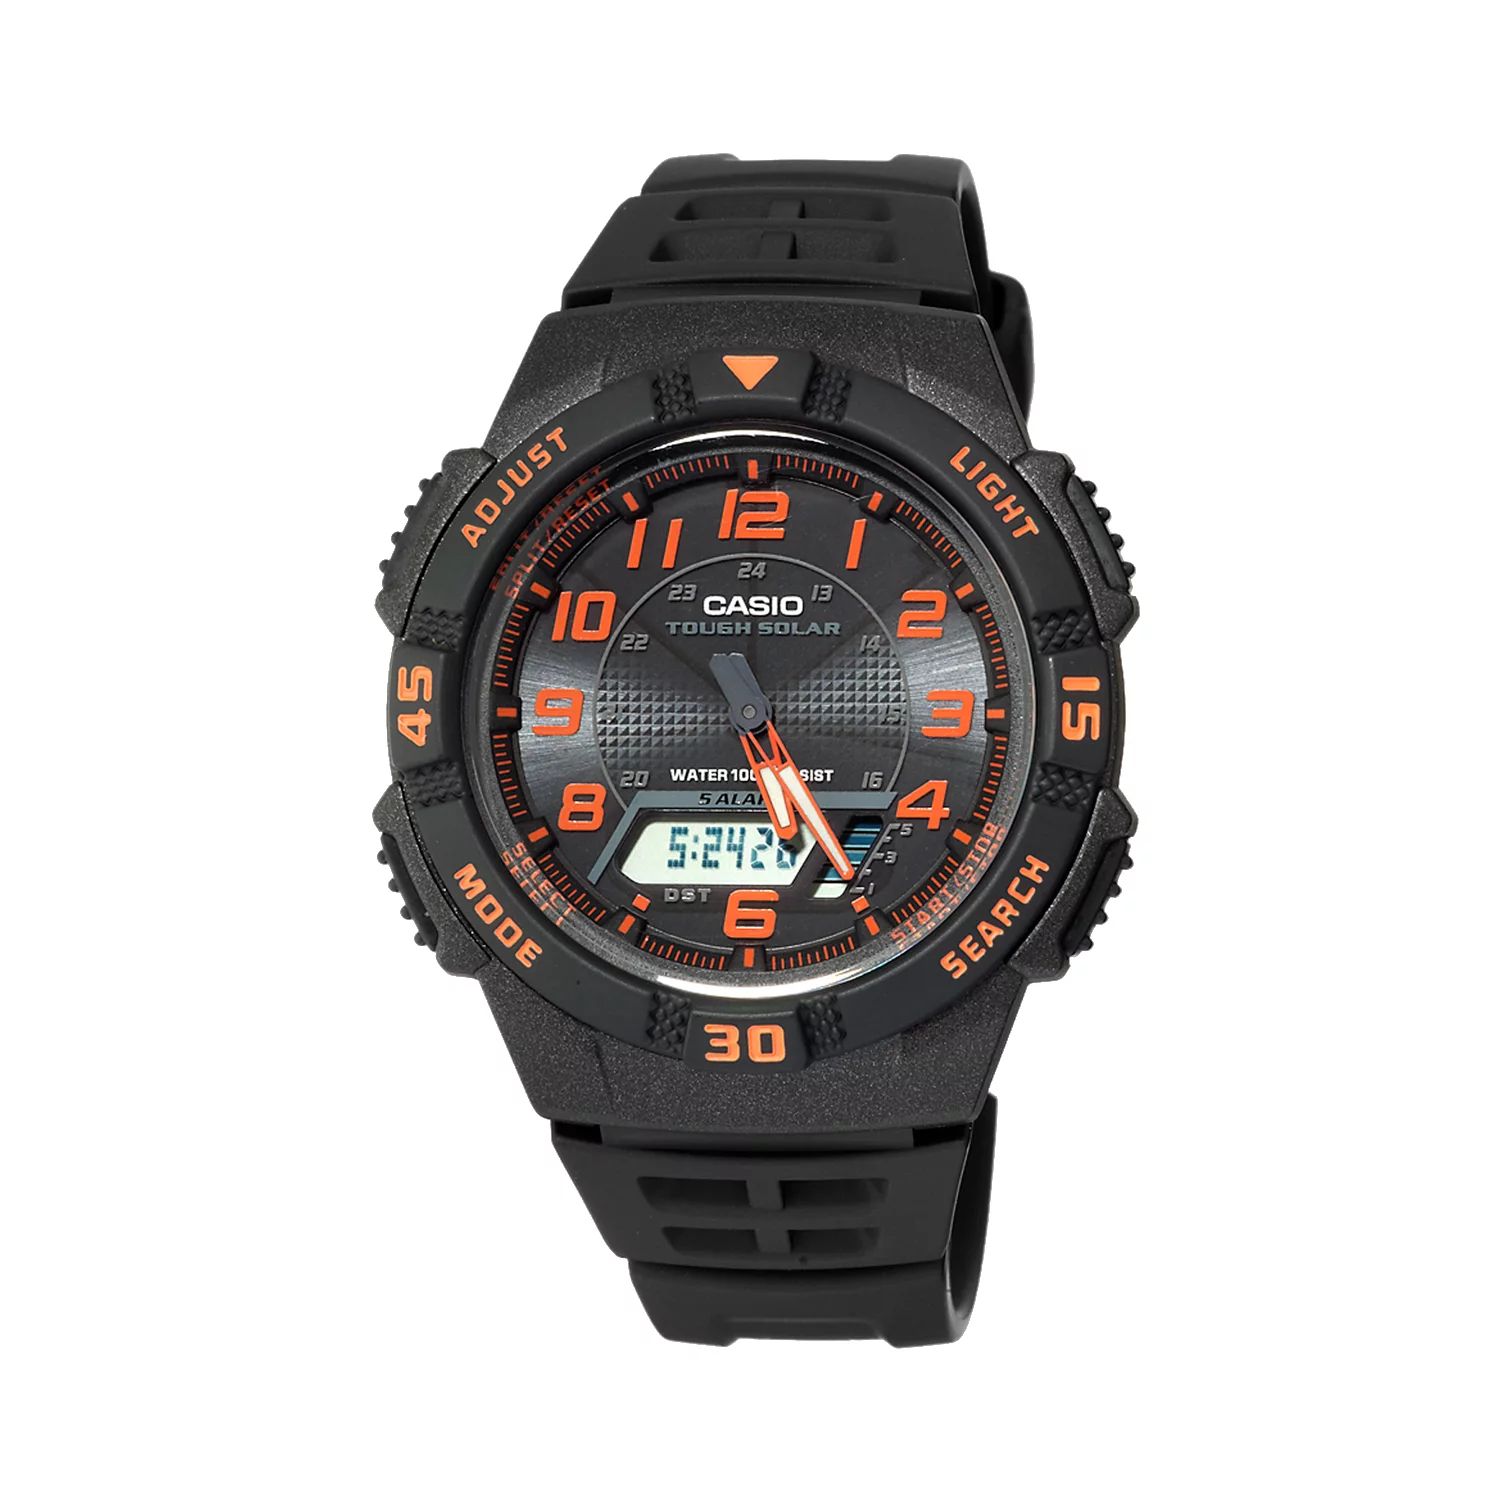 Мужские спортивные аналоговые и цифровые часы-хронограф Tough Solar с солнечной батареей — AQS800W- 1B2VCFK Casio цена и фото